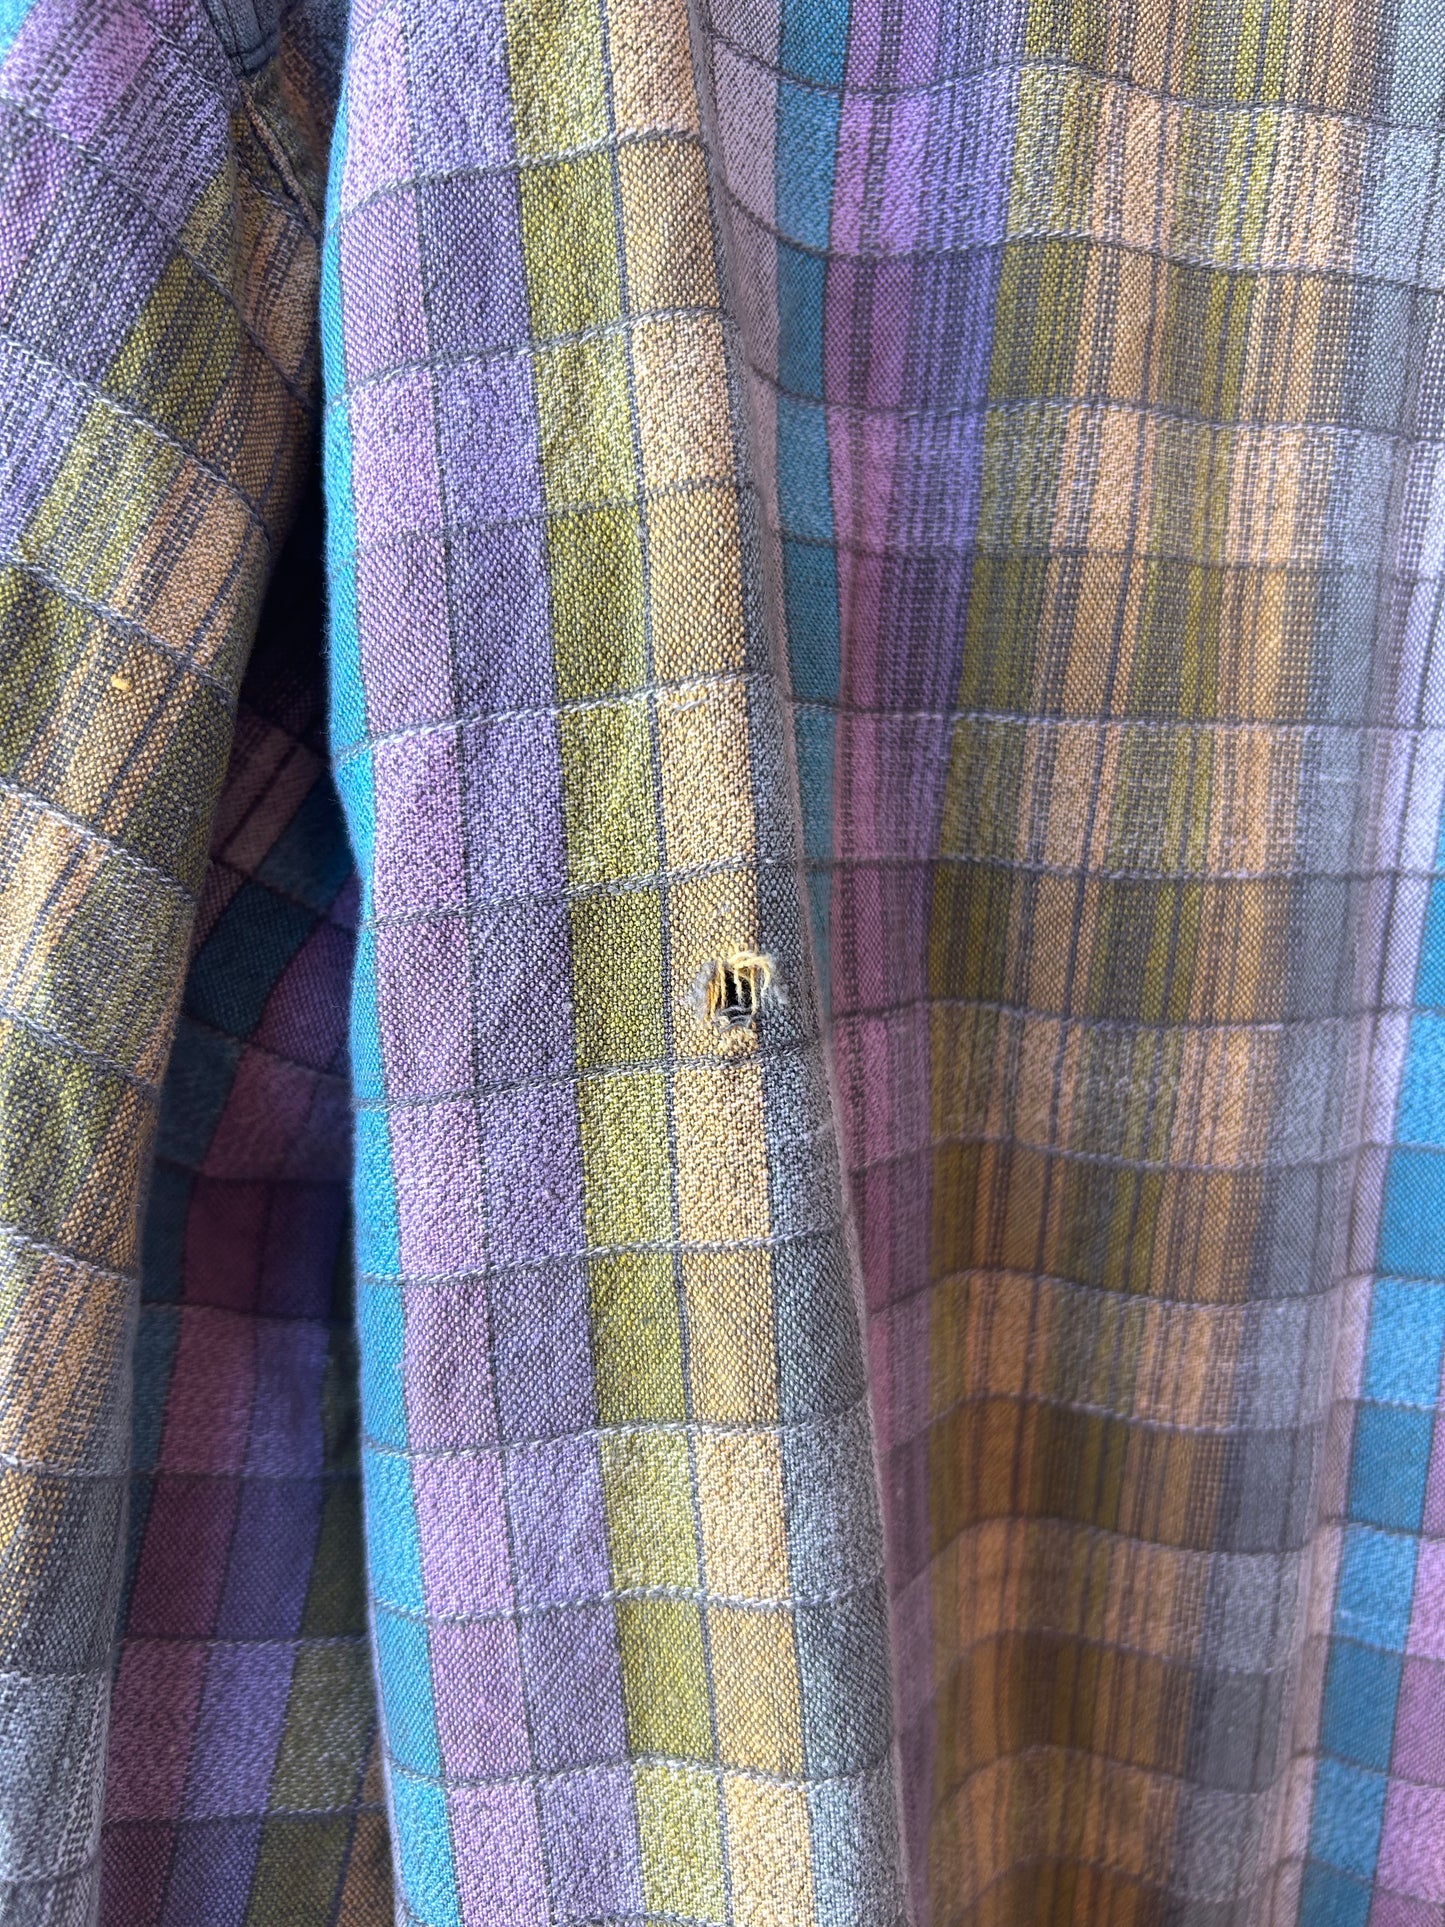 90’s Vintage Pastel Plaid Cotton Button Down Shirt / Size XL